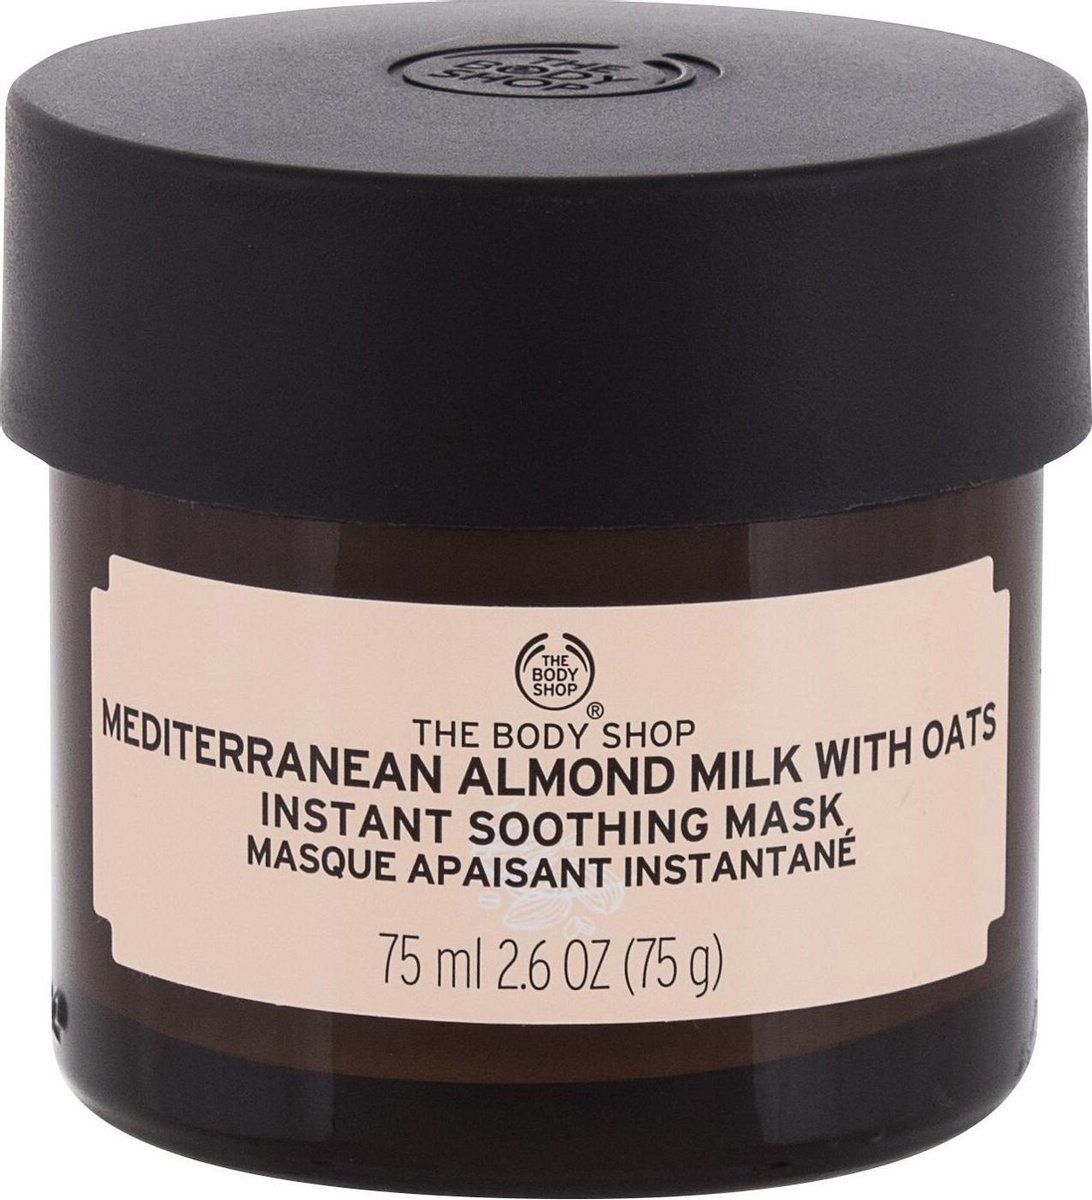 The Body Shop Gezichtsmasker Mediterranean Almond Milk With Oats 75 ml